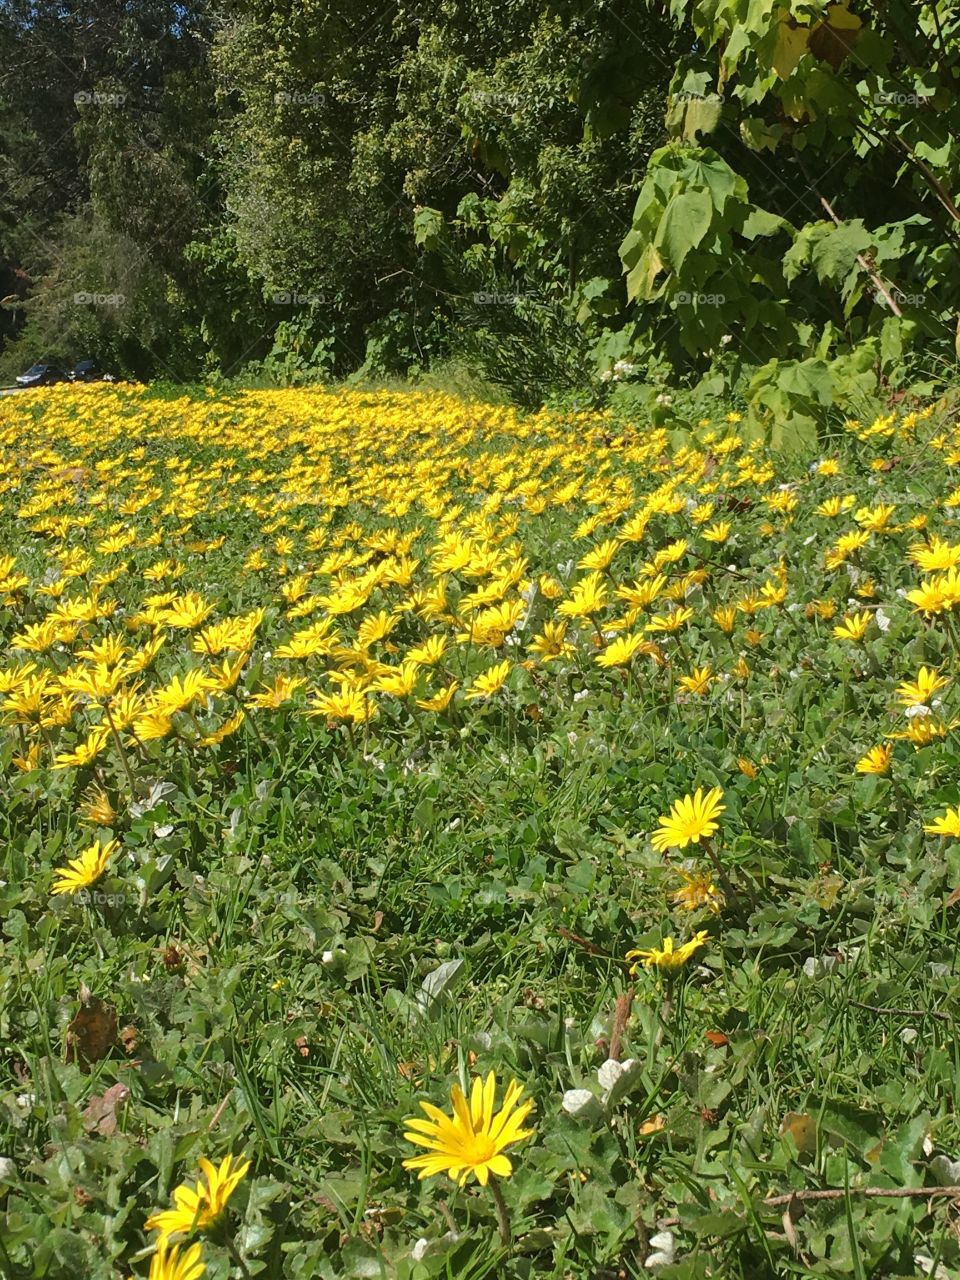 Field of dandelions